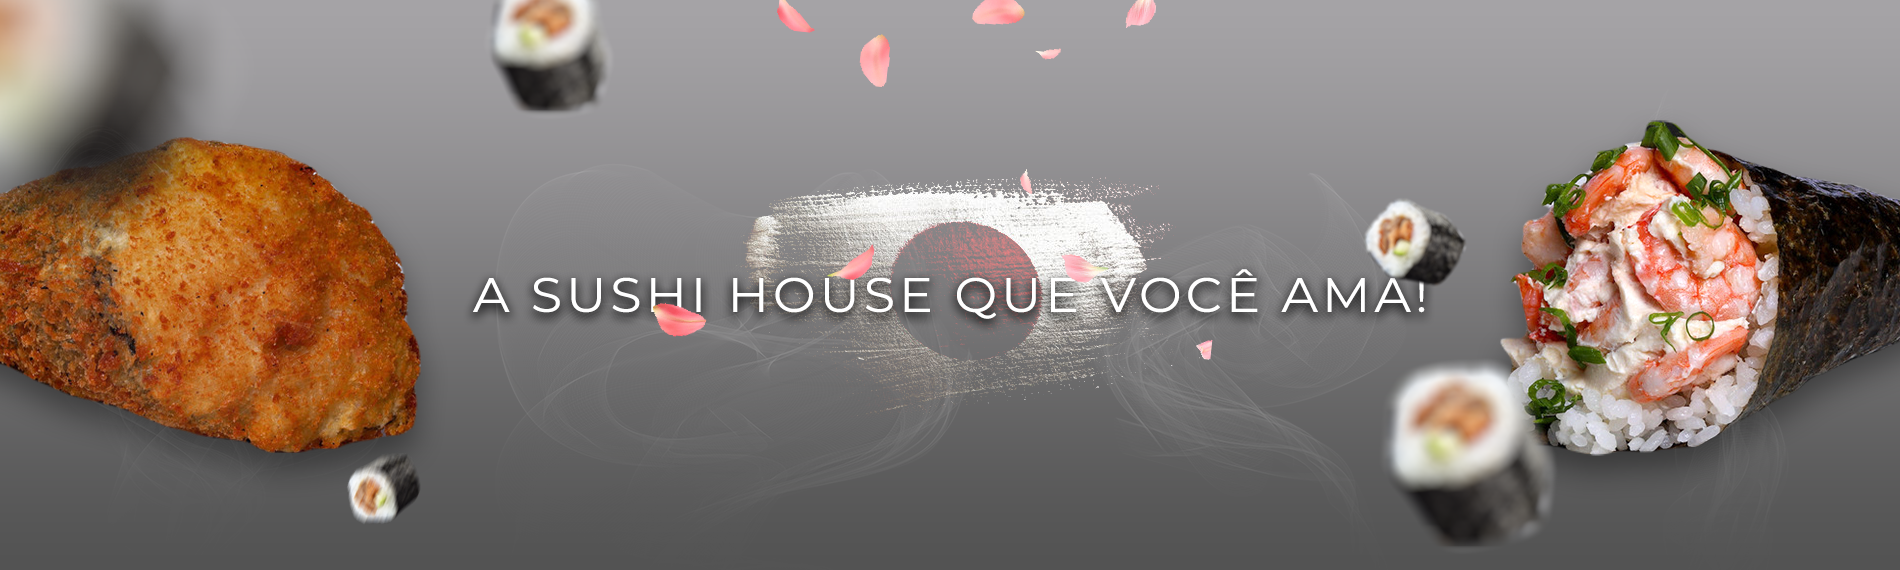 banner da empresa Yali Sushi House Capim Macio